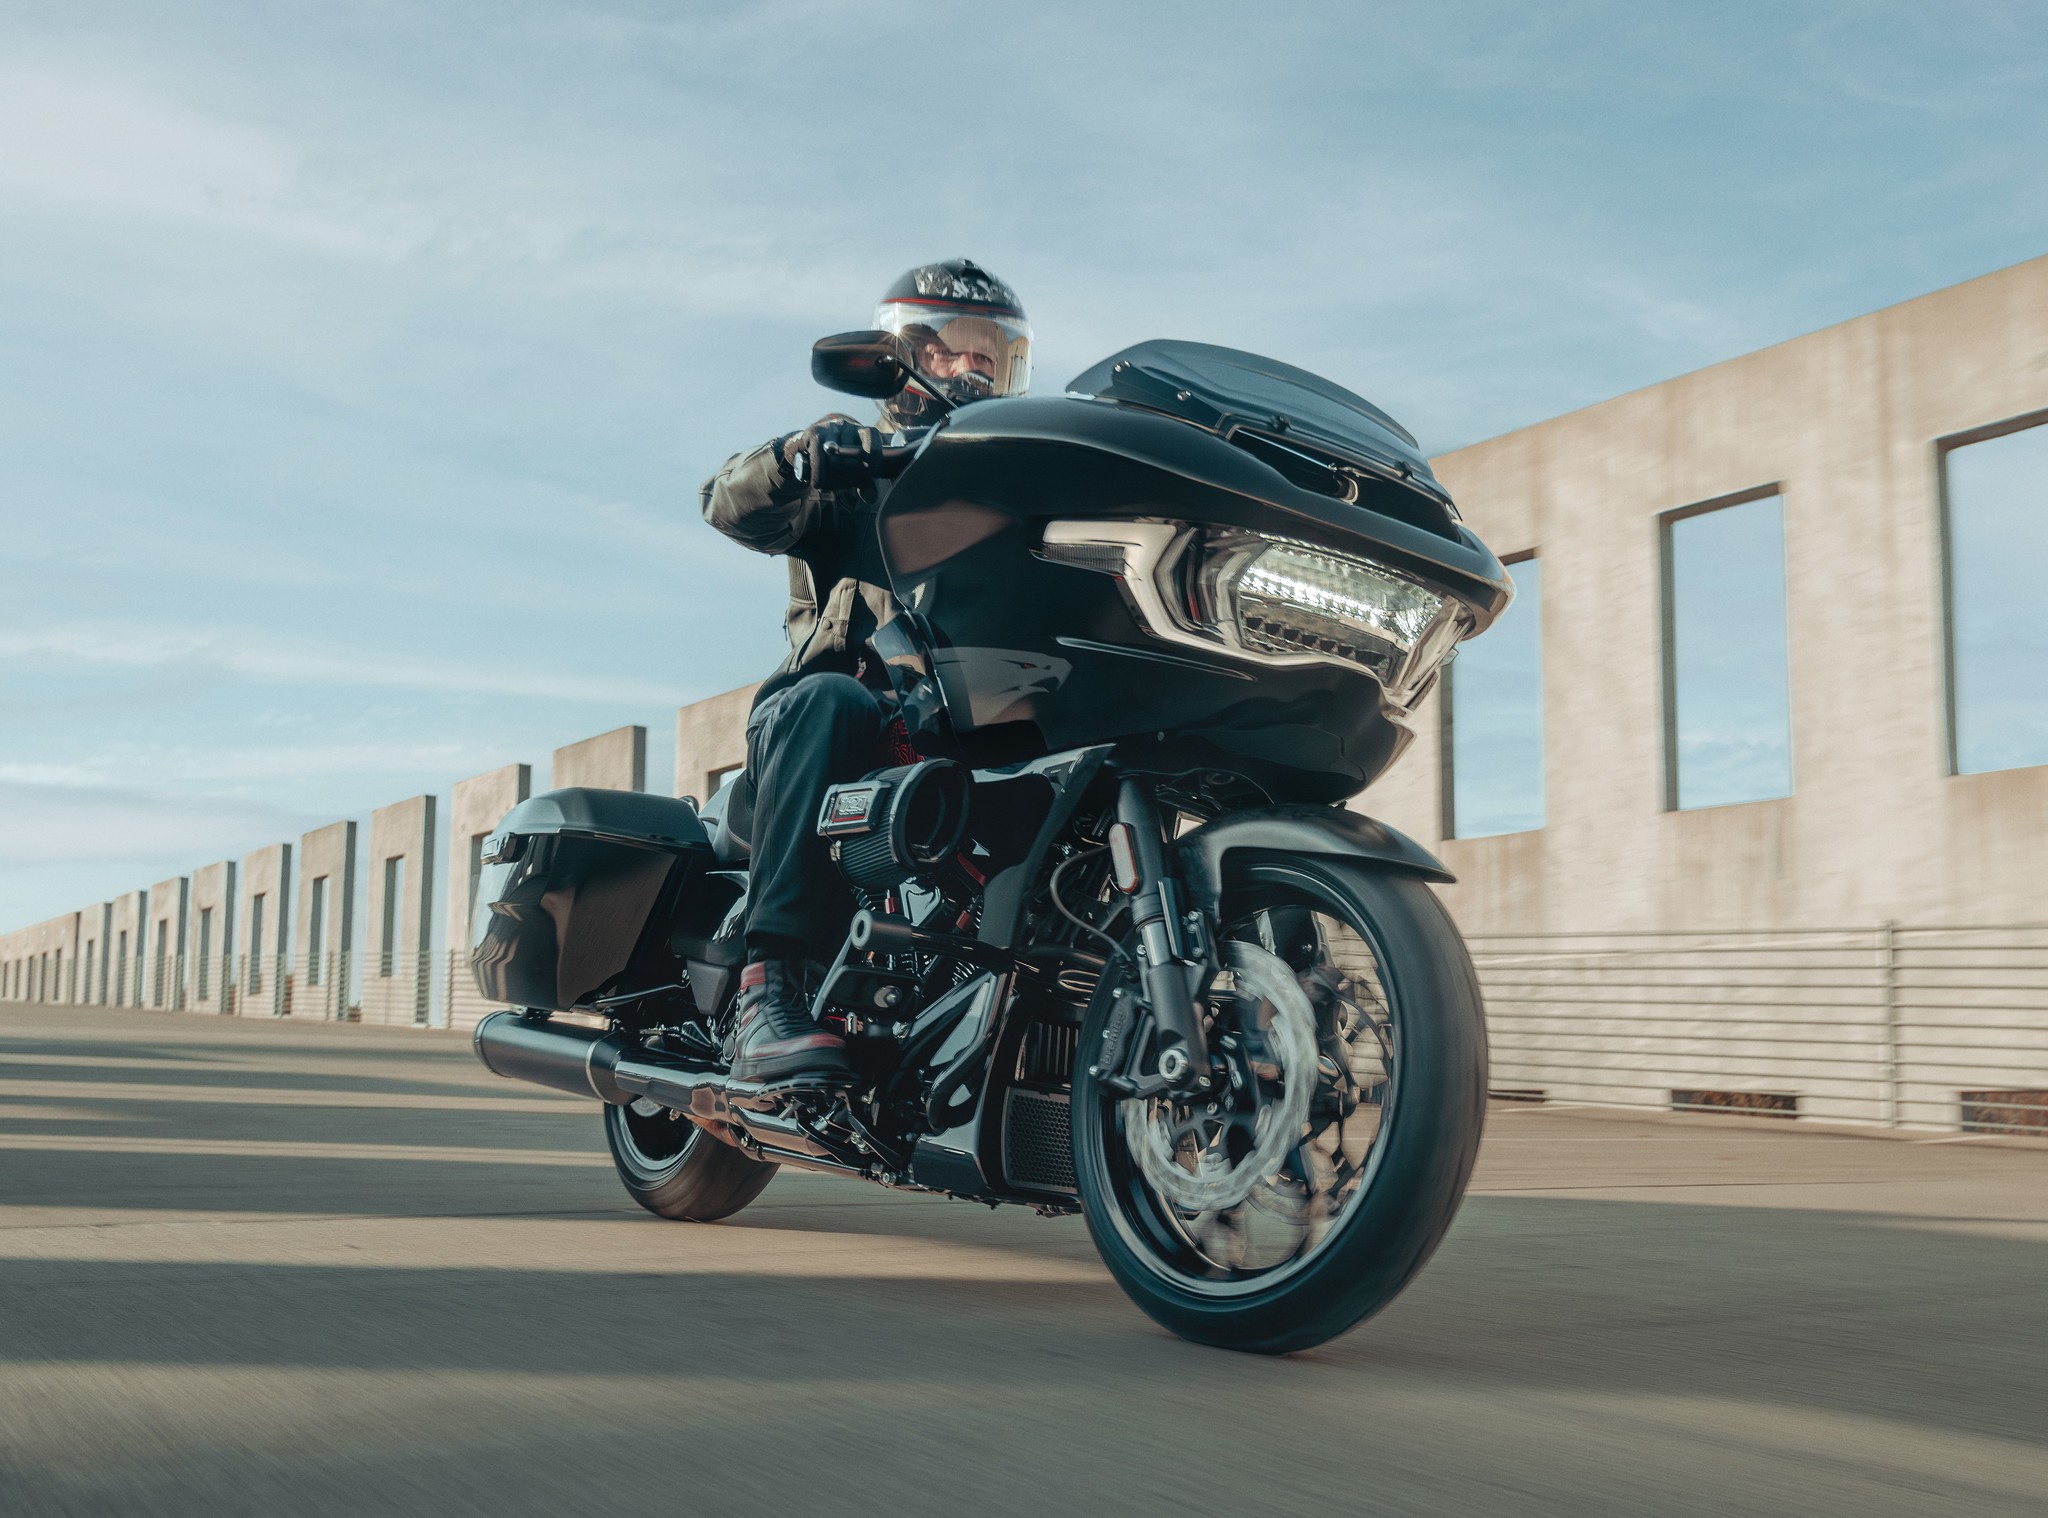 La CVO Road Glide ST supone mayor nivel del estilo bagger de Harley-Davidson.